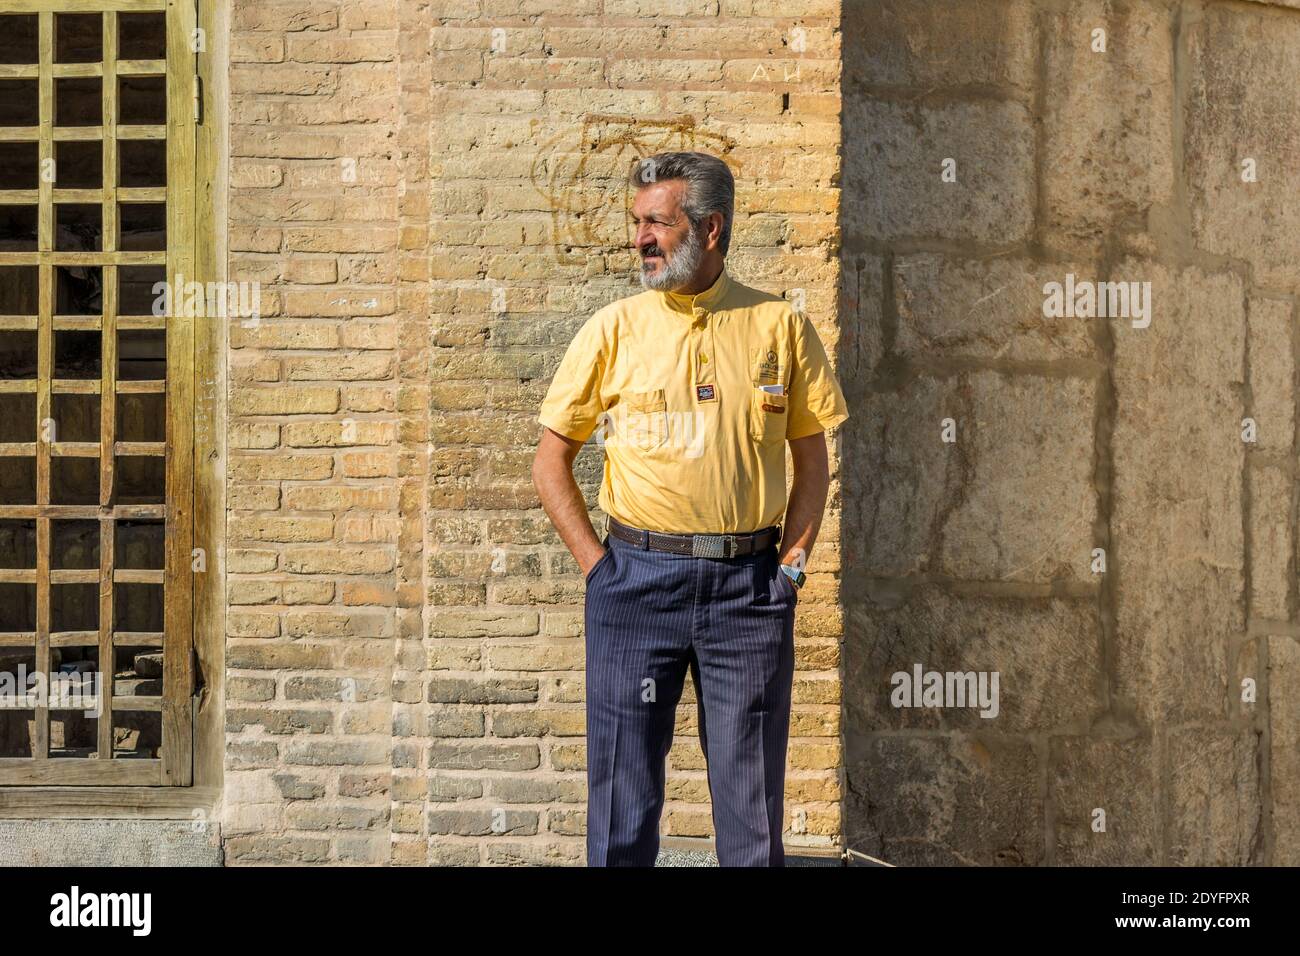 Un iranien debout sur le pont Allahverdi Khan, également connu sous le nom de si-o-seh Pol ou pont de trente-trois travées, Esfahan, Iran. Banque D'Images